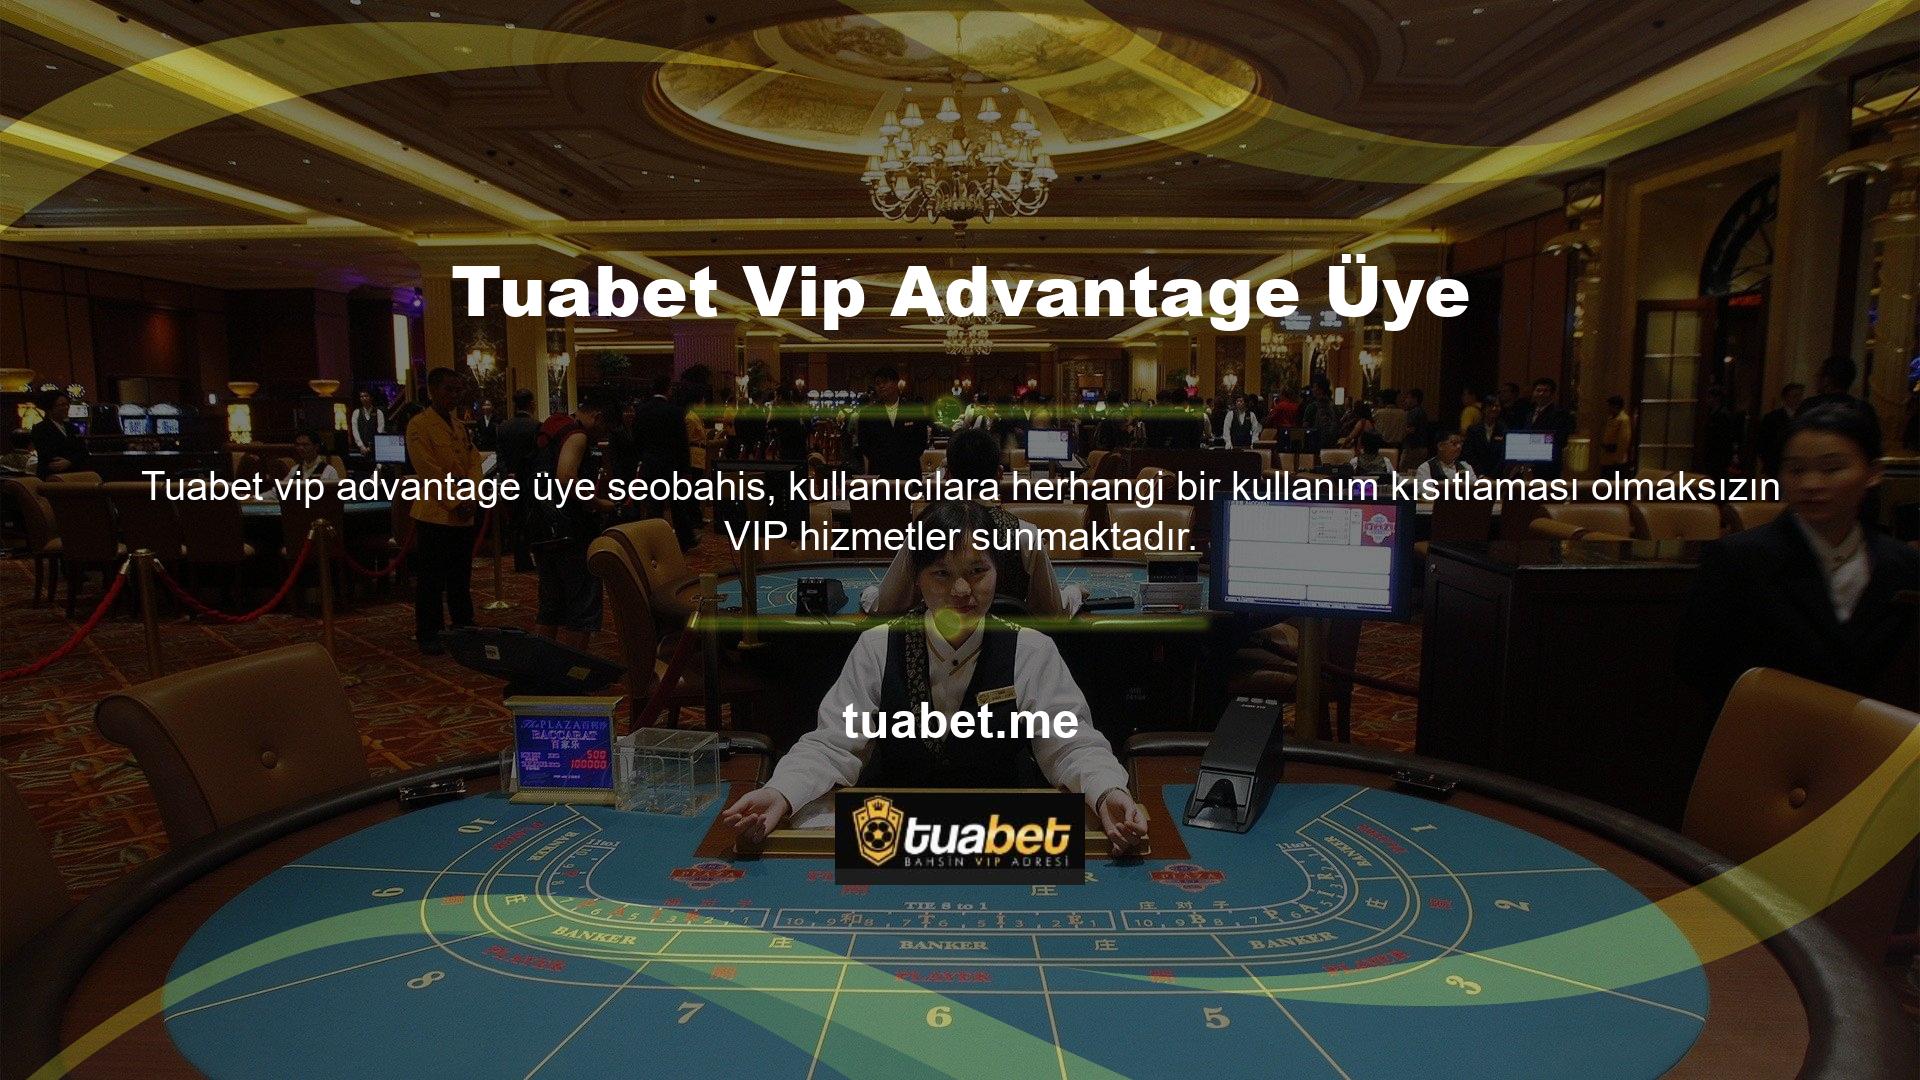 Daha fazla bahis seçeneği ve daha düşük limitler sunan Tuabet VIP Casino hakkında daha fazla bilgi almak için lütfen Tuabet Müşteri Hizmetleri ile iletişime geçin veya @Tuabet